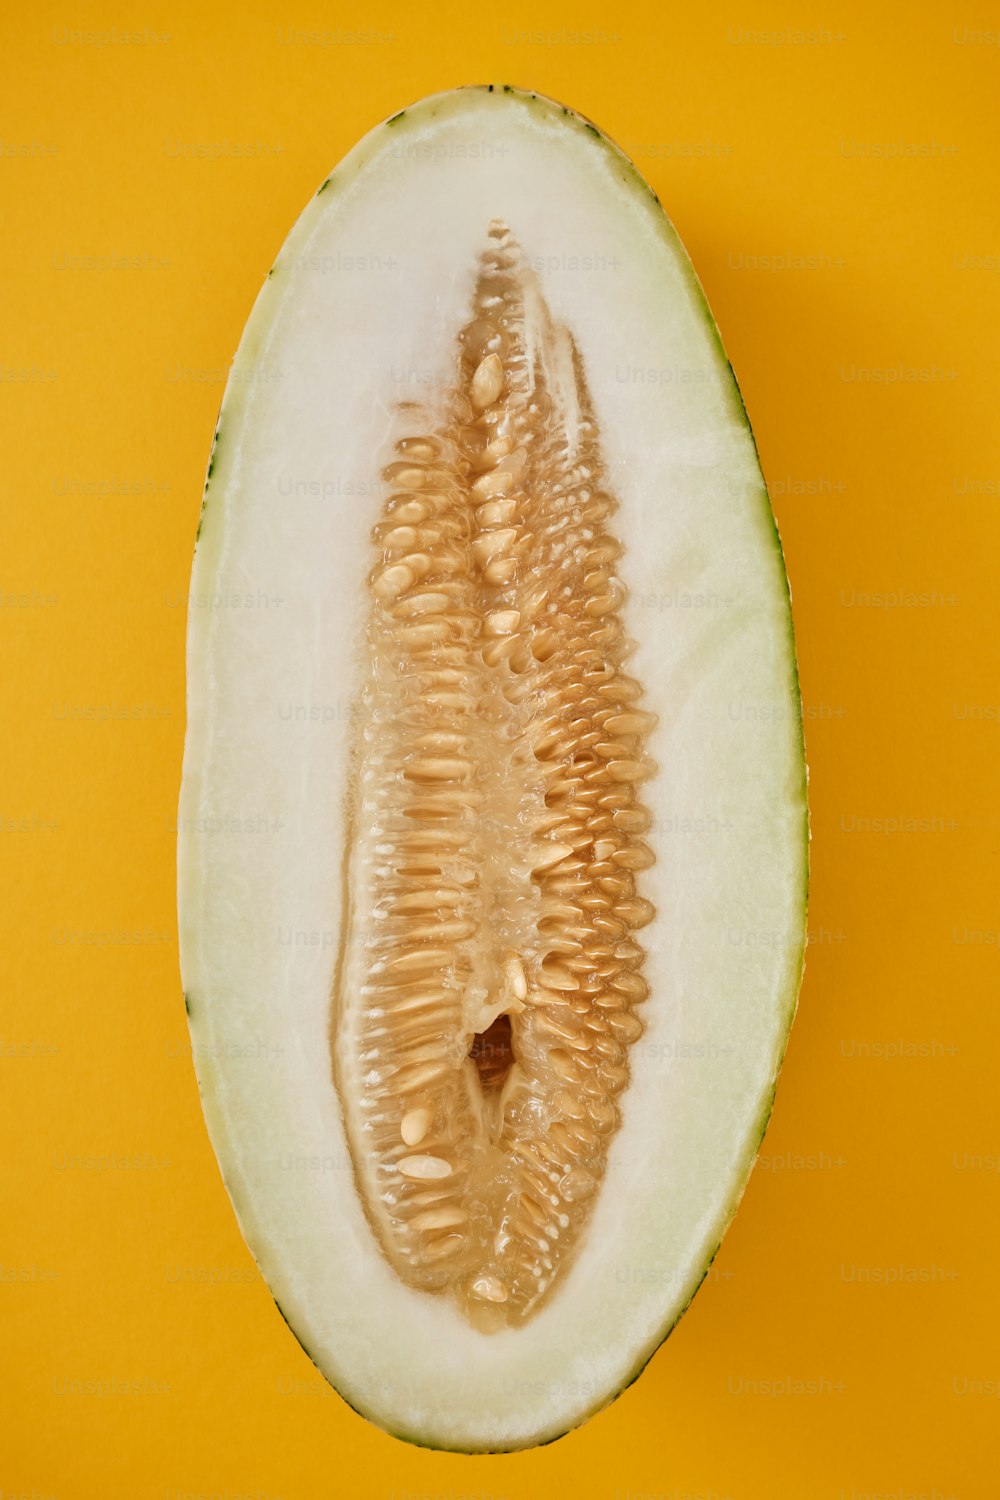 eine halbierte Melone auf gelbem Hintergrund